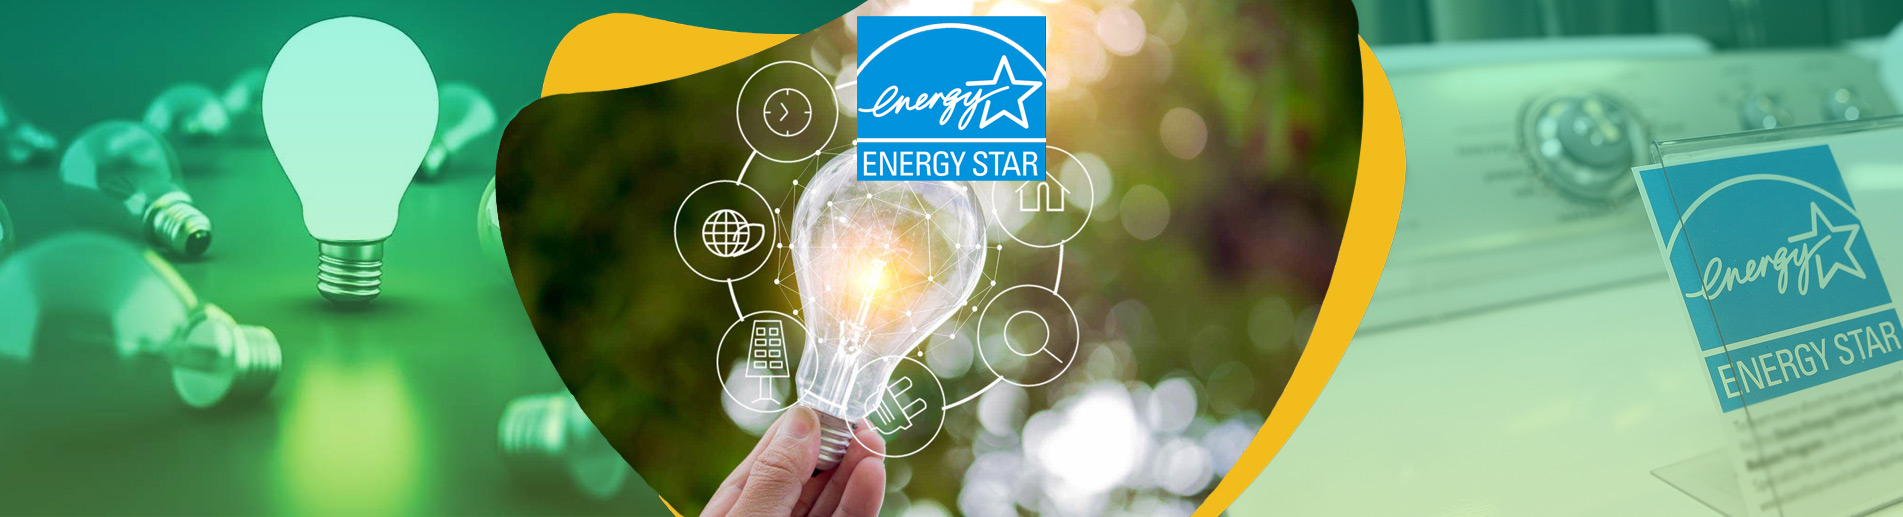 Energy Star İşareti Amerika Enerji Tasarrufu Standardı